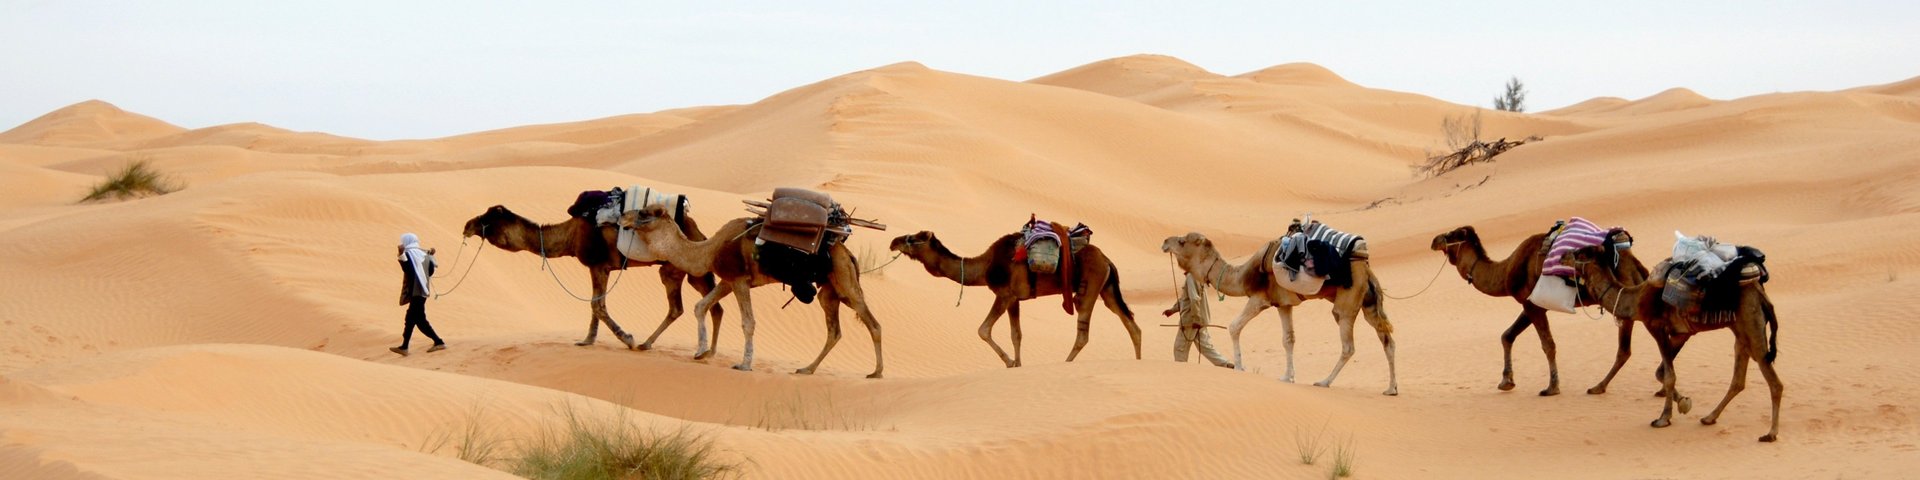 Kamelkarawane schreitet durch die Sanddünen der Sahara in Tunesien